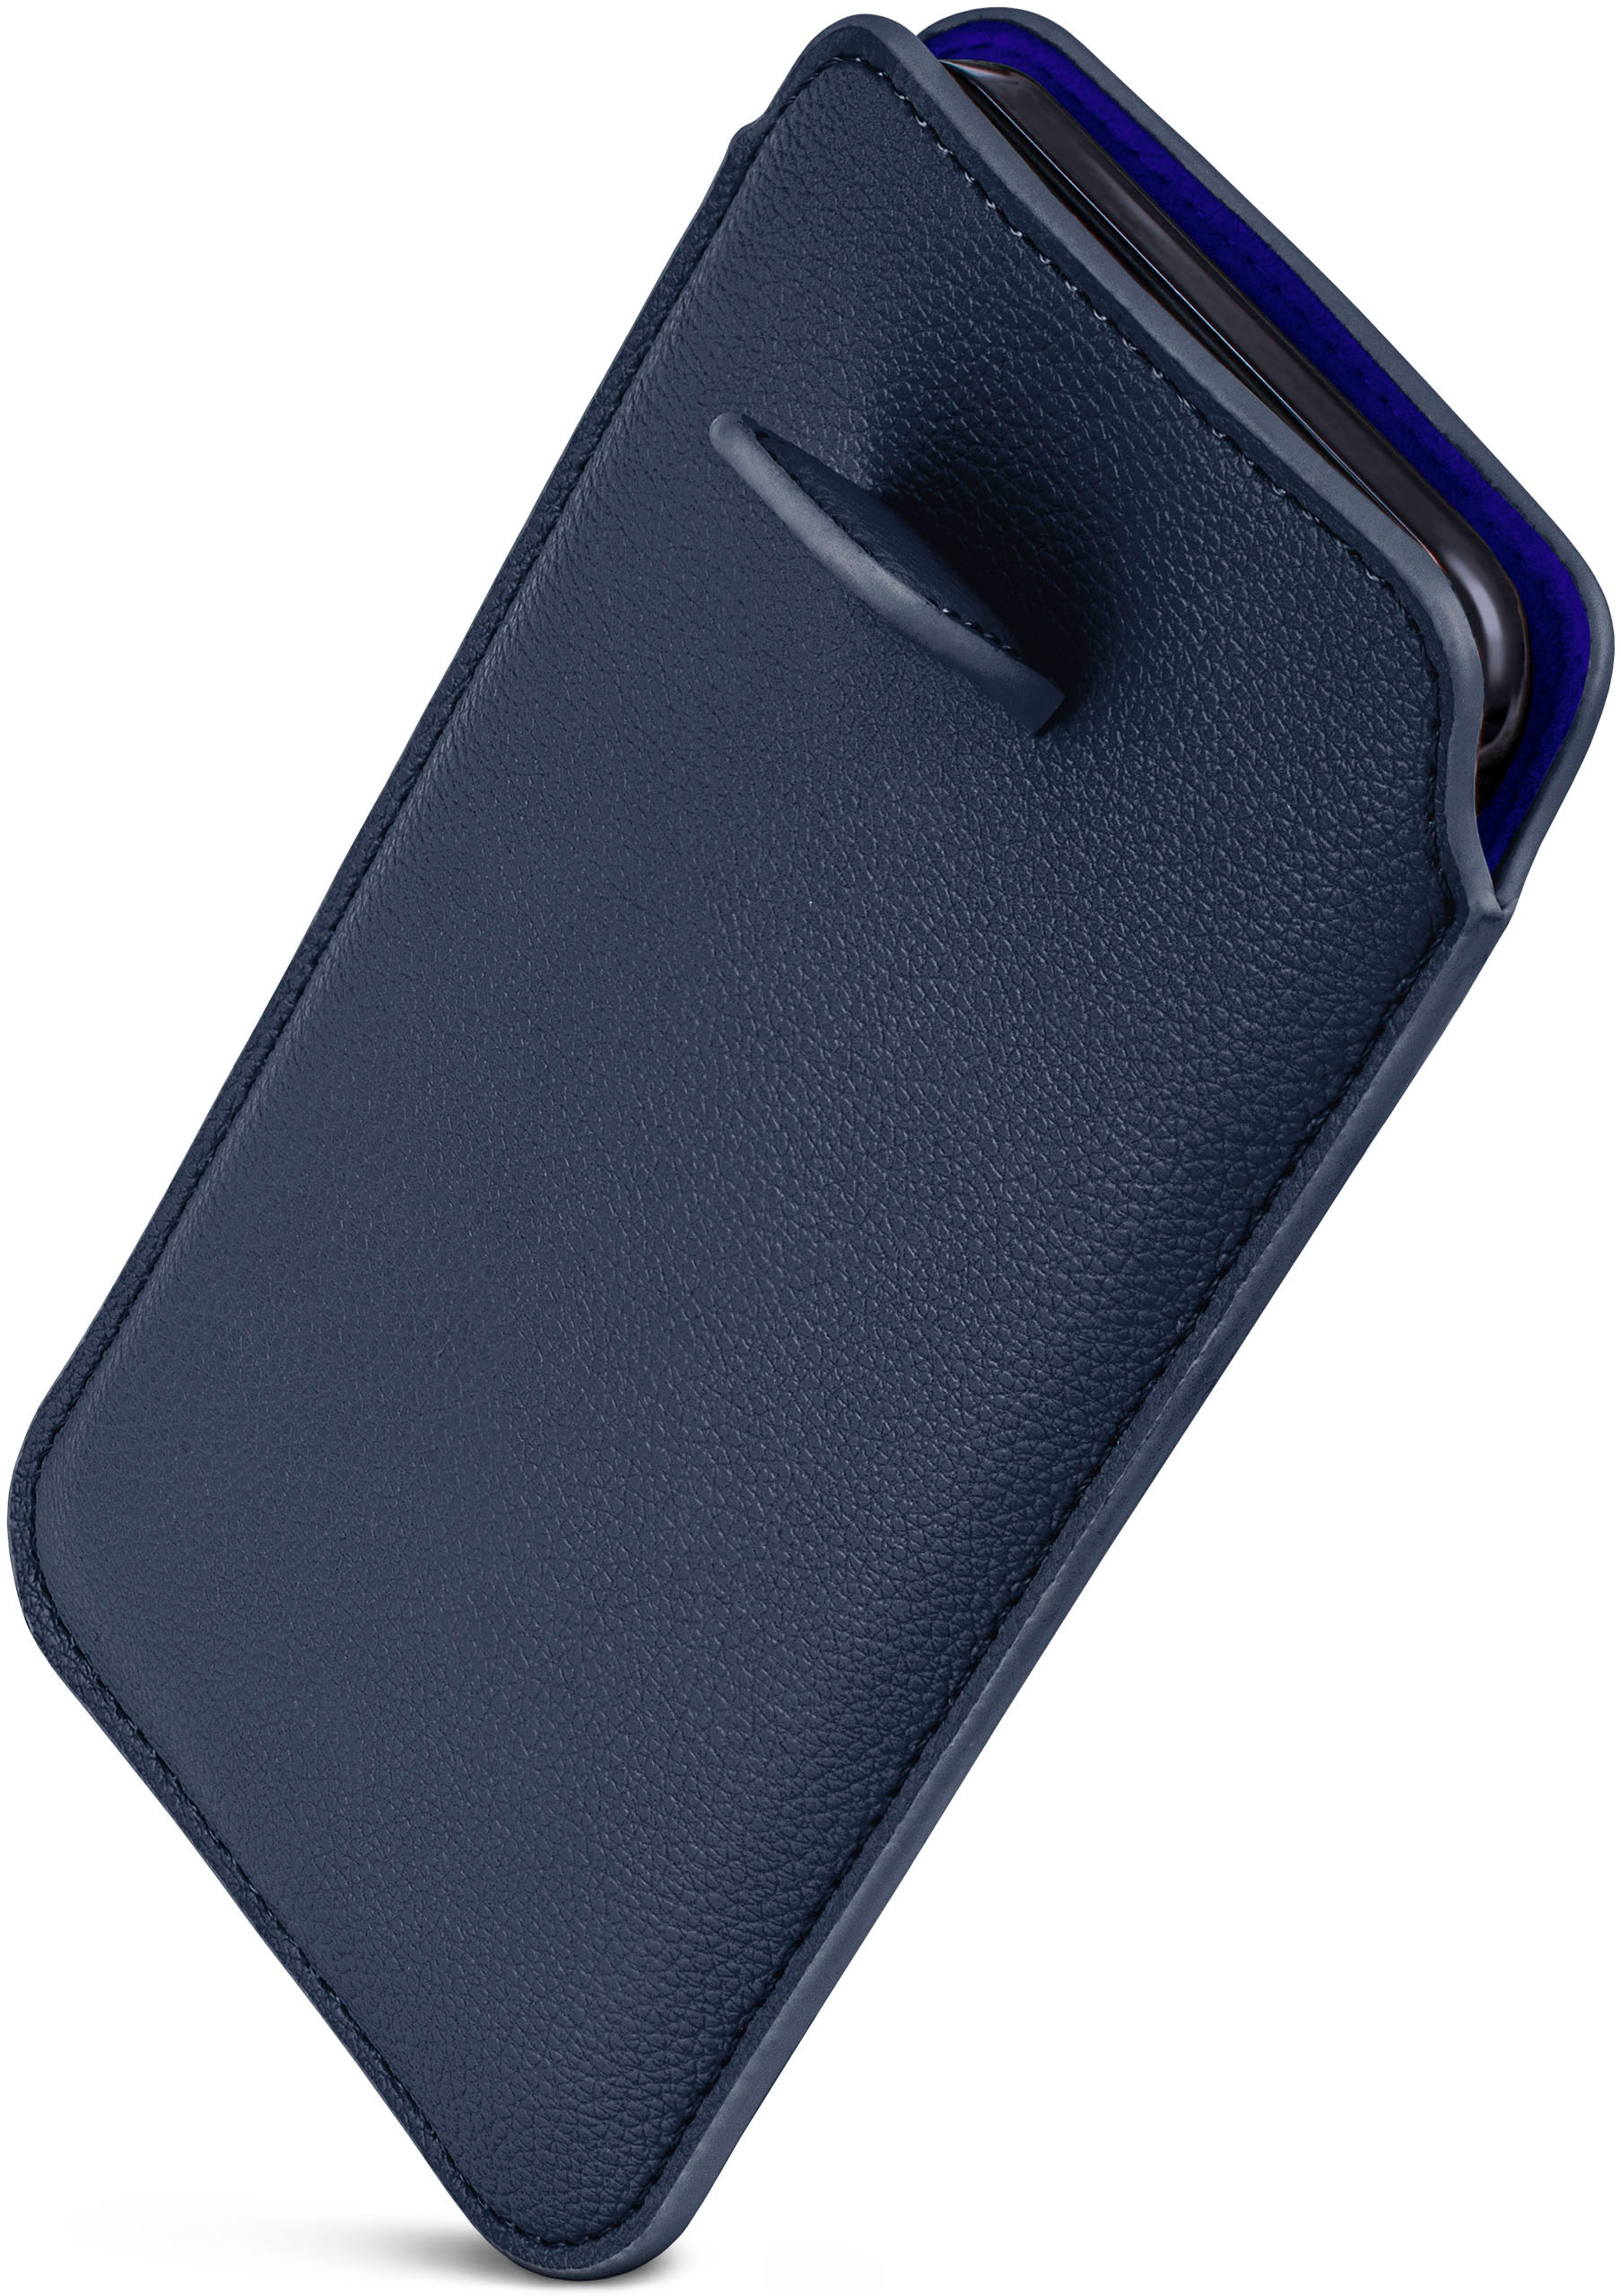 Zuglasche, Samsung, Cover, Full (2016), Einsteckhülle Galaxy mit ONEFLOW A5 Dunkelblau